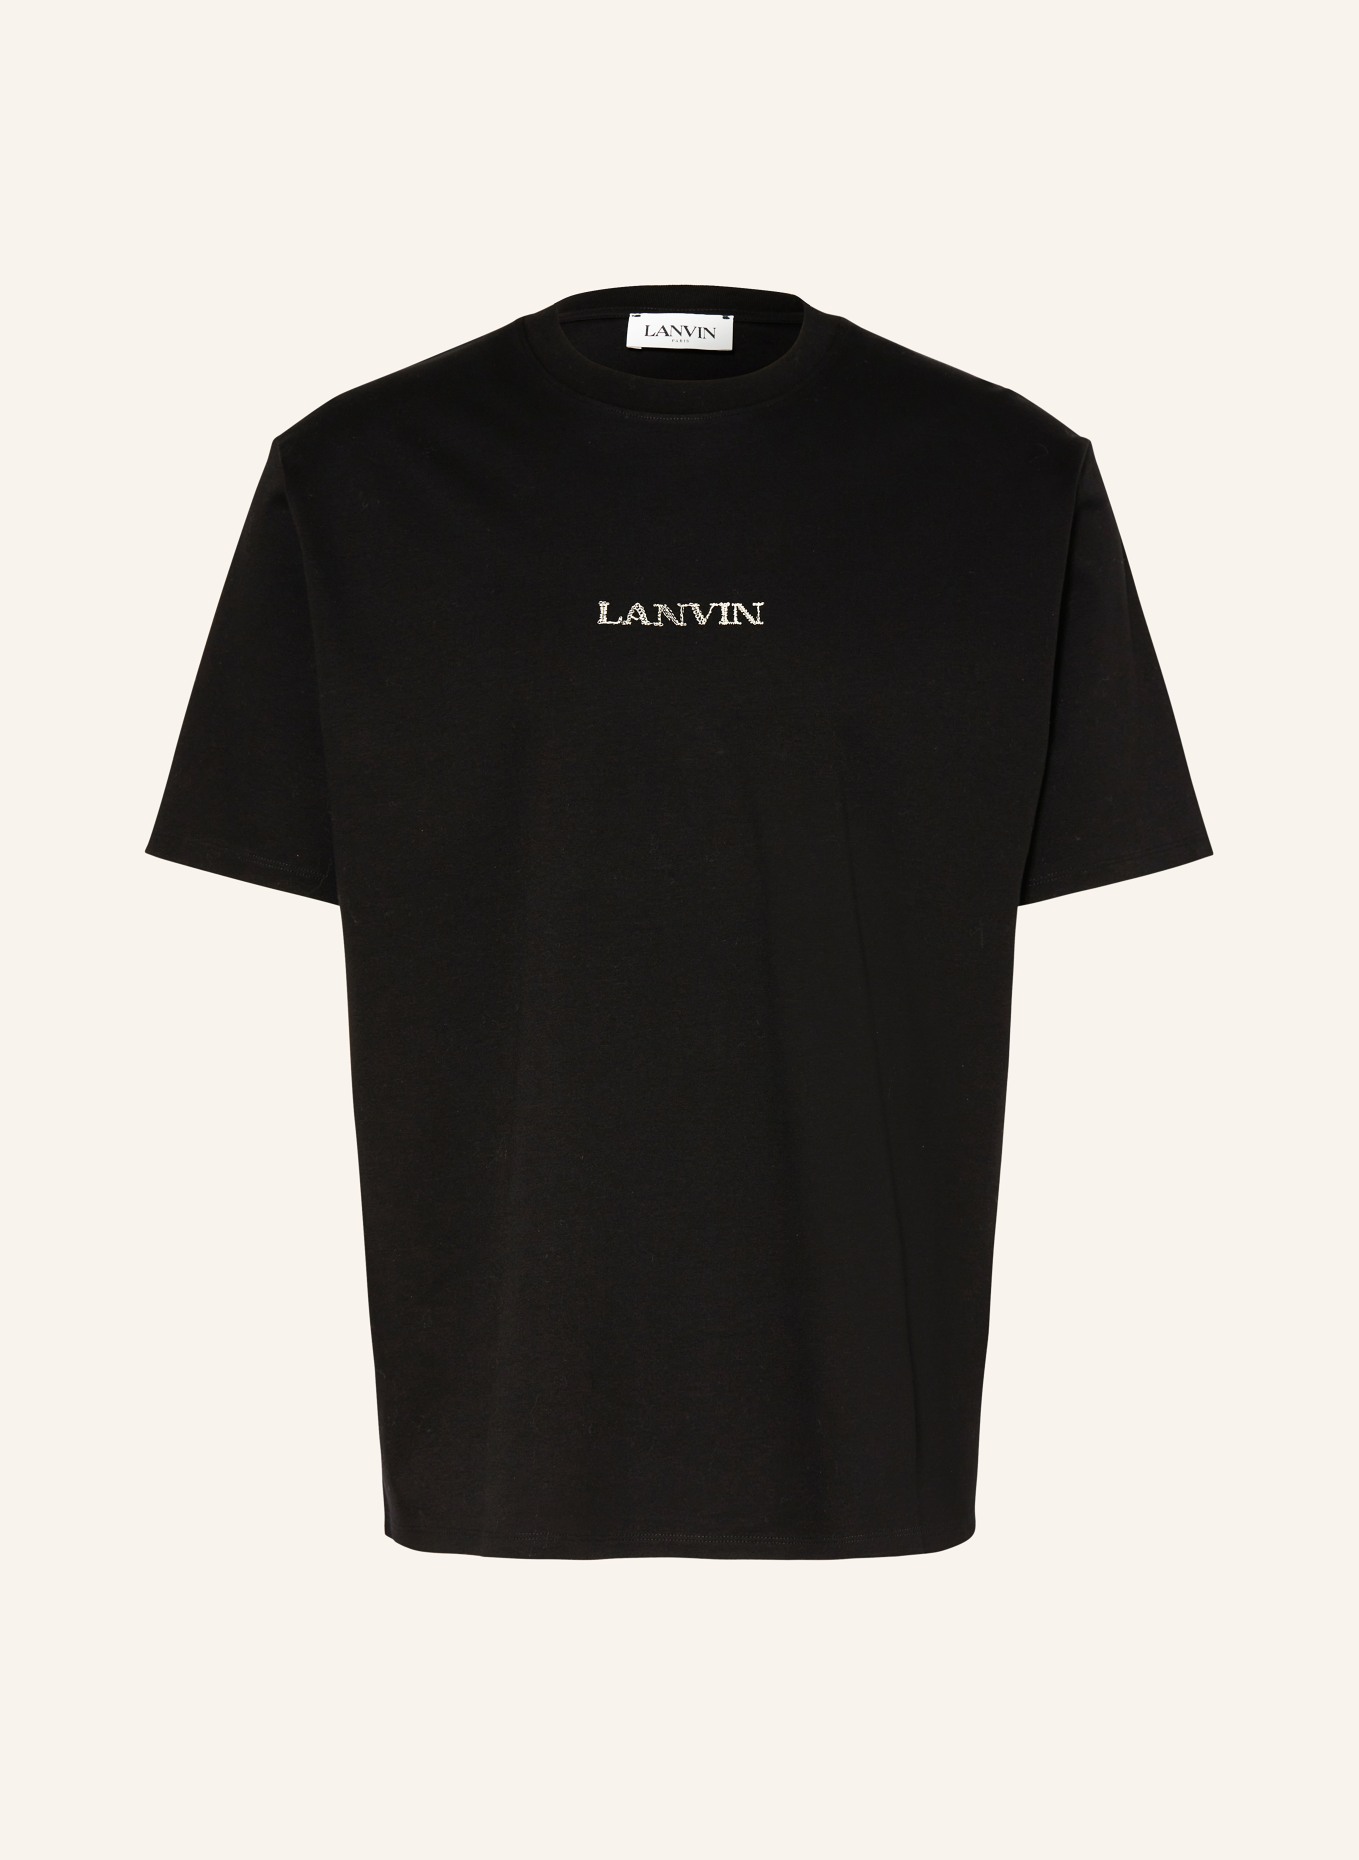 LANVIN T-shirt, Color: BLACK (Image 1)